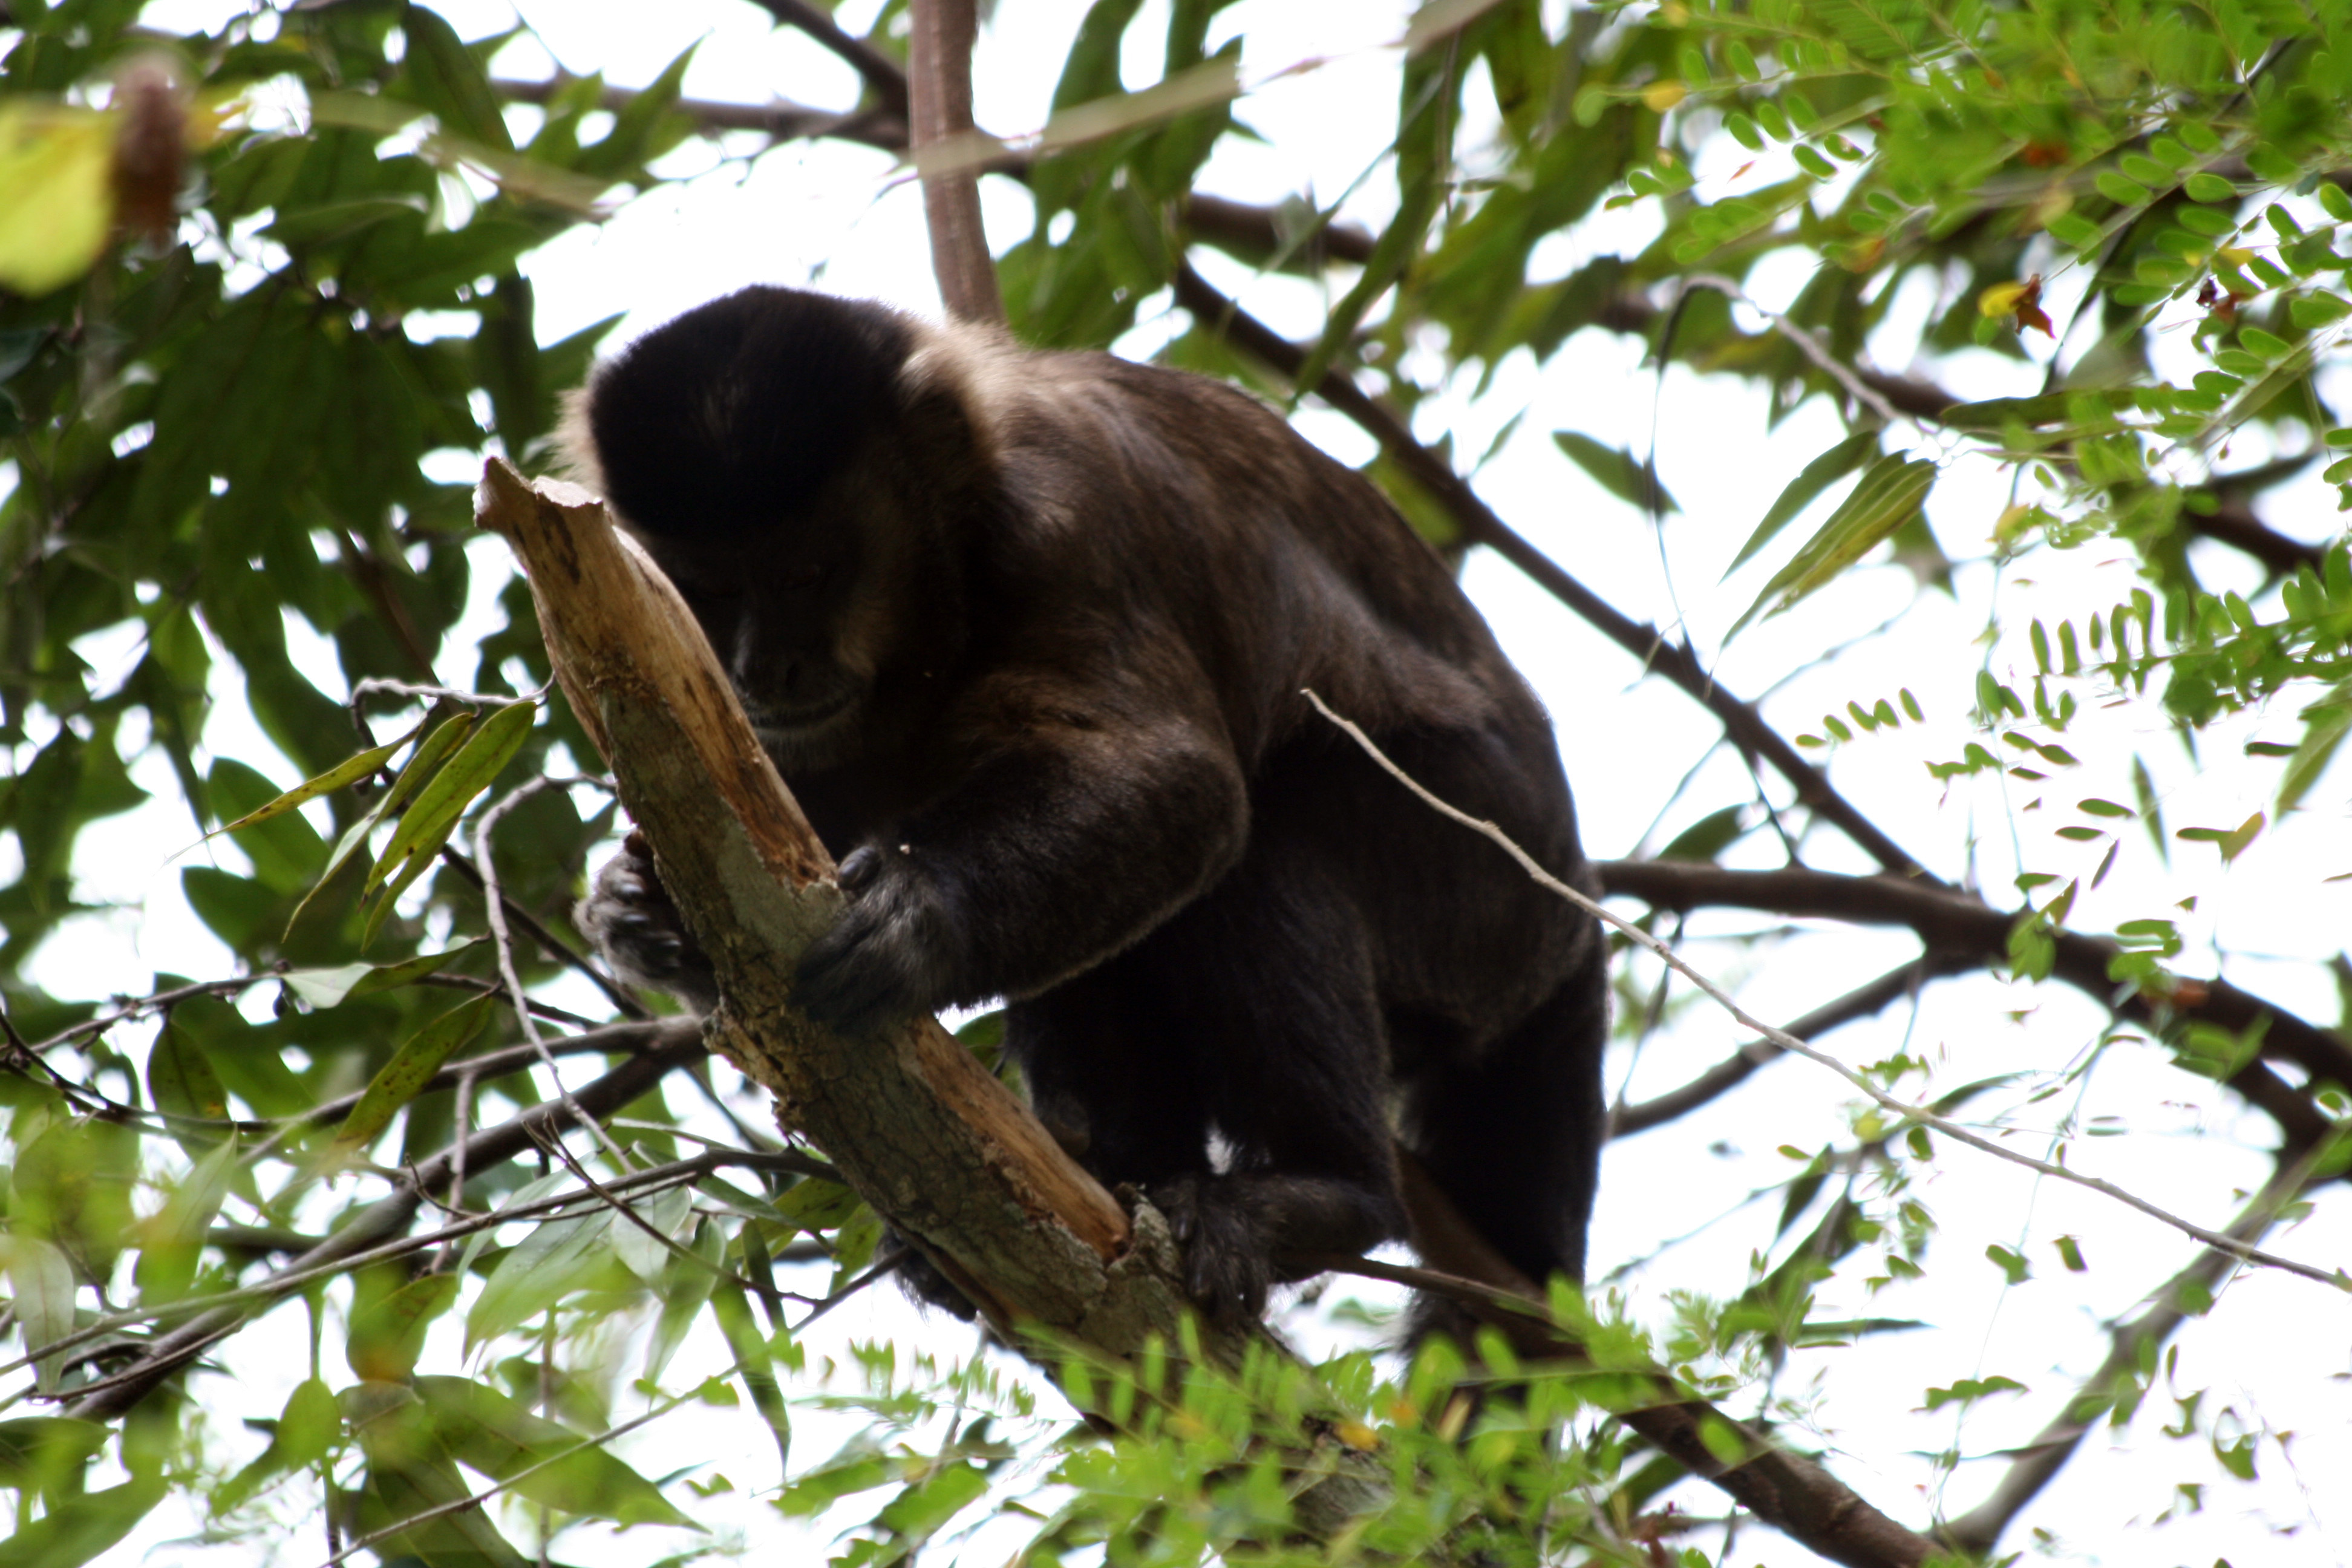 Macacos-prego (Sapajus nigritus) – informações